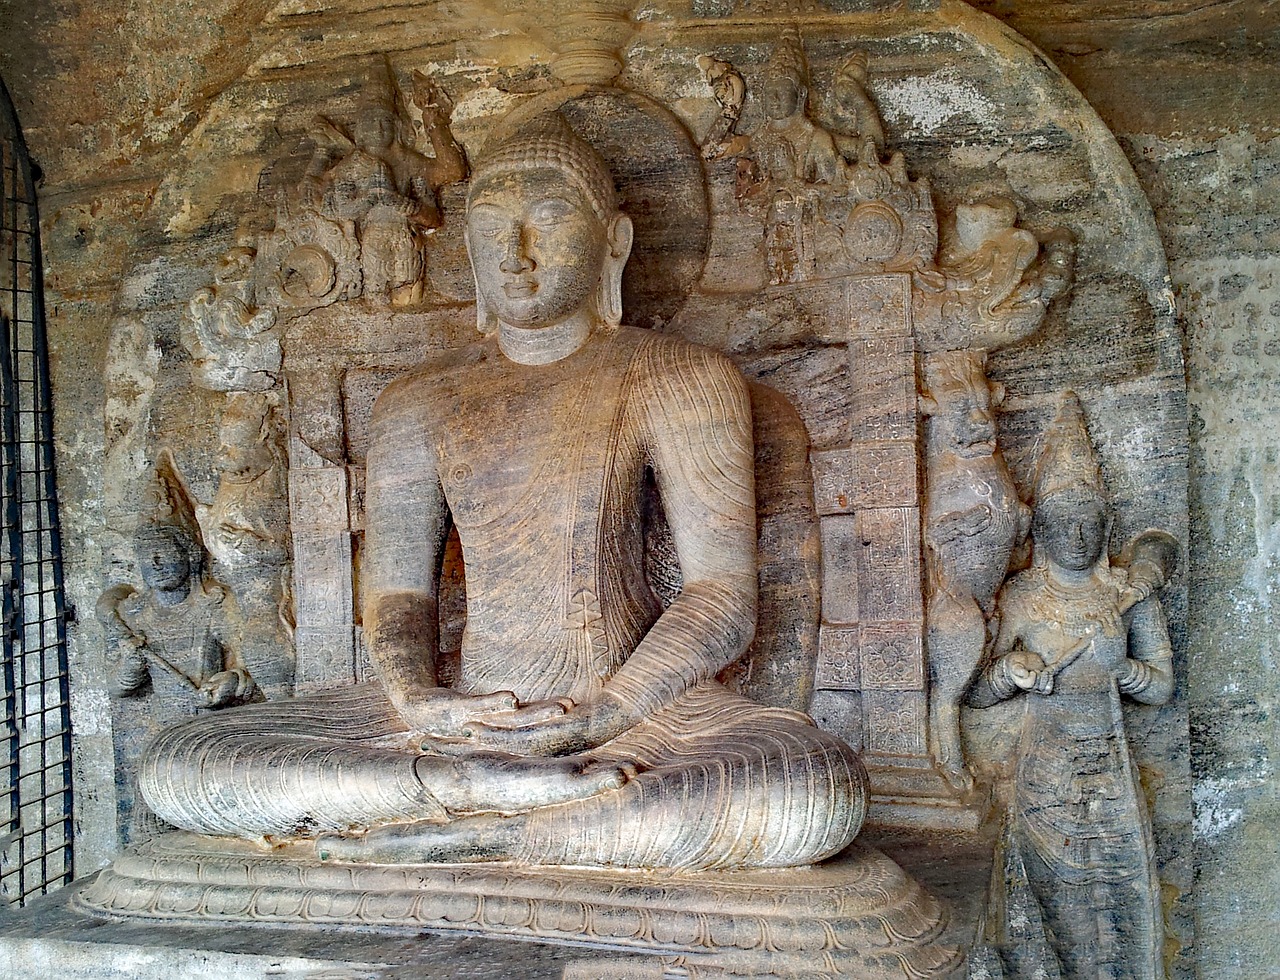 polonnaruwa sri lanka buddha free photo